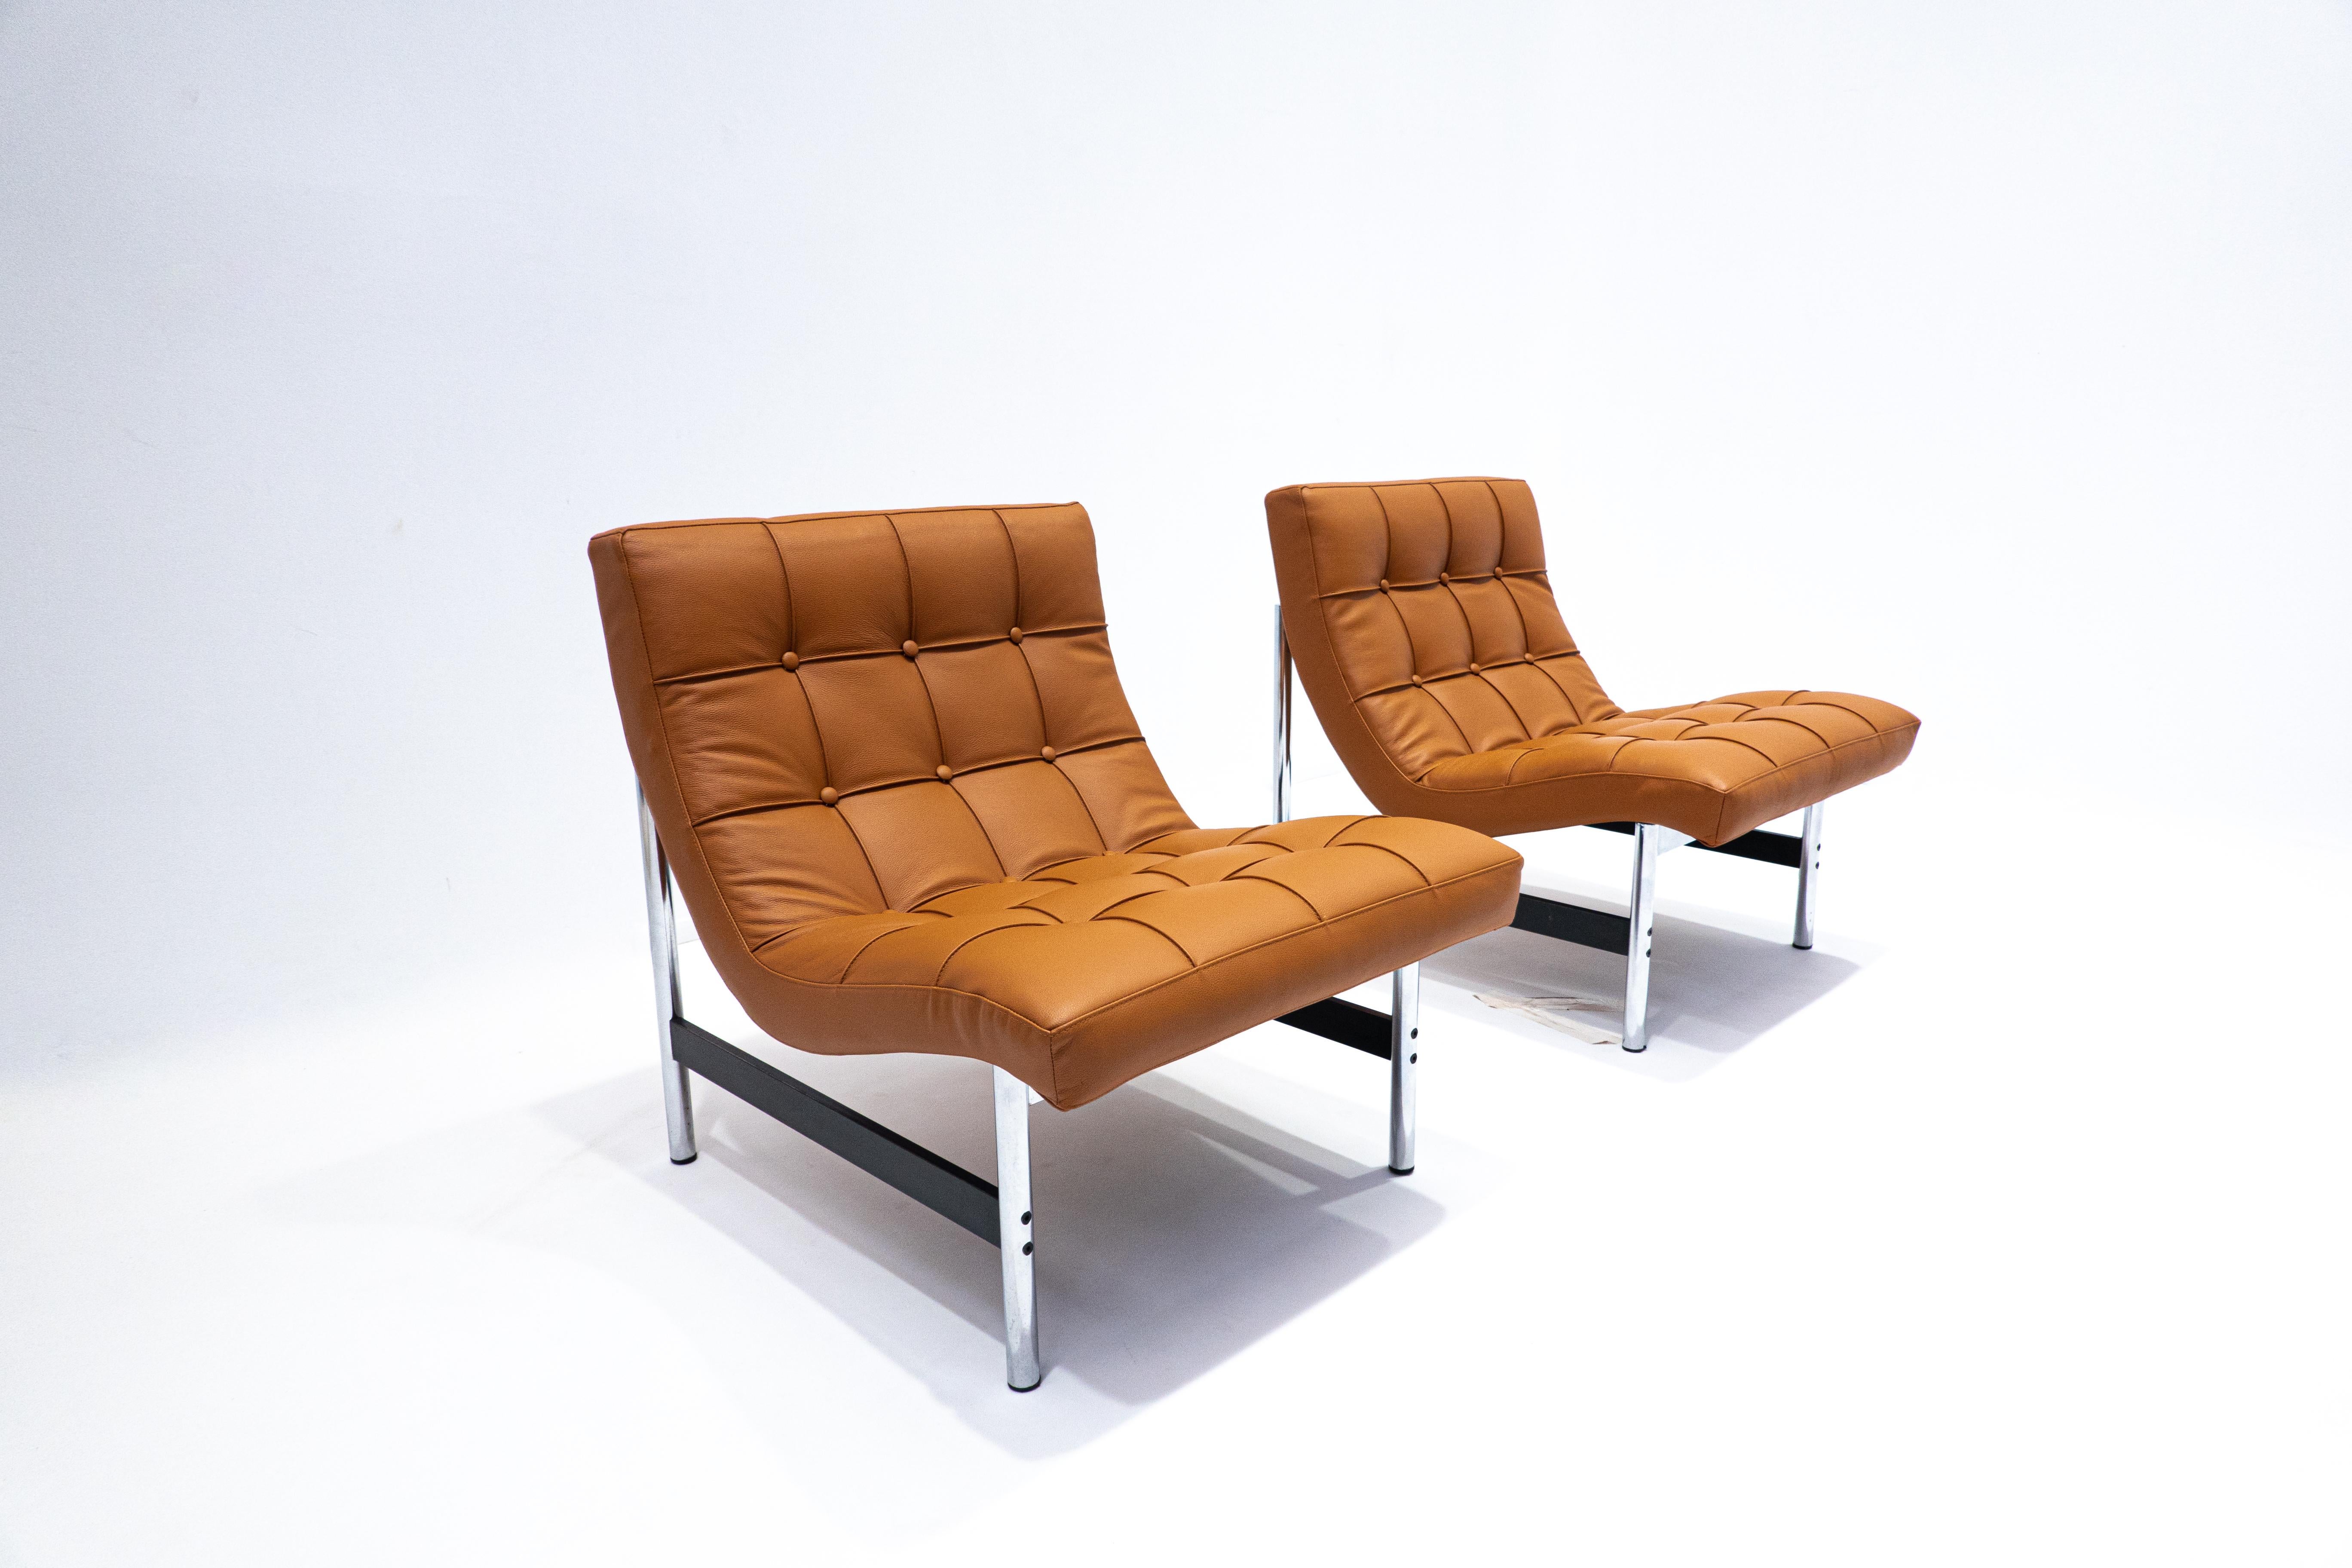 Paire de fauteuils italiens modernes du milieu du siècle, cuir cognac, années 1970.